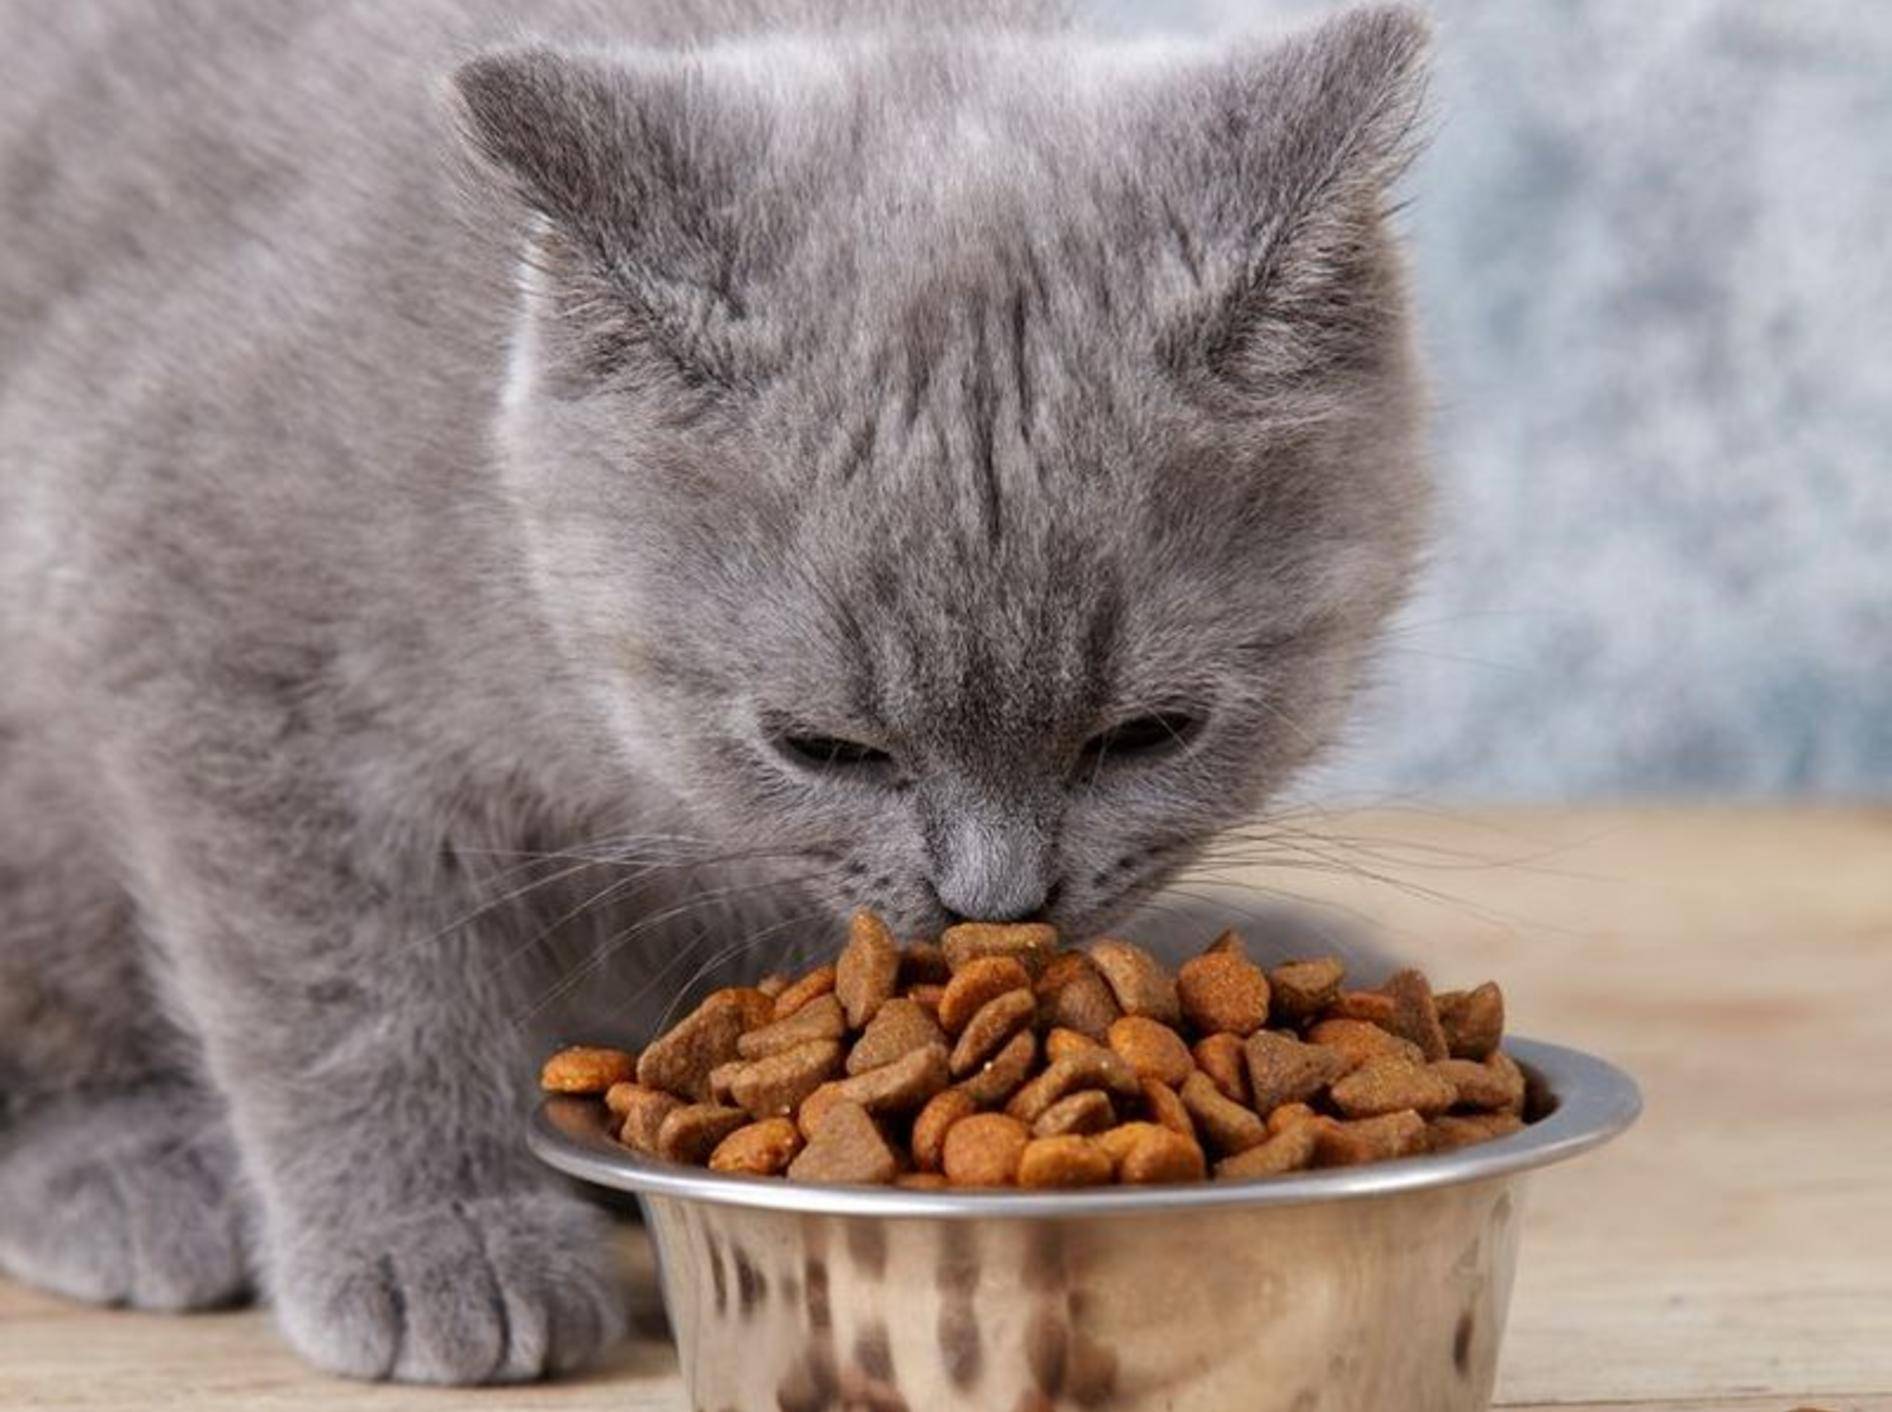 Britisch Kurzhaar Katze frisst Trockenfutter: Ob das gesund für sie ist? – Shutterstock / Magone